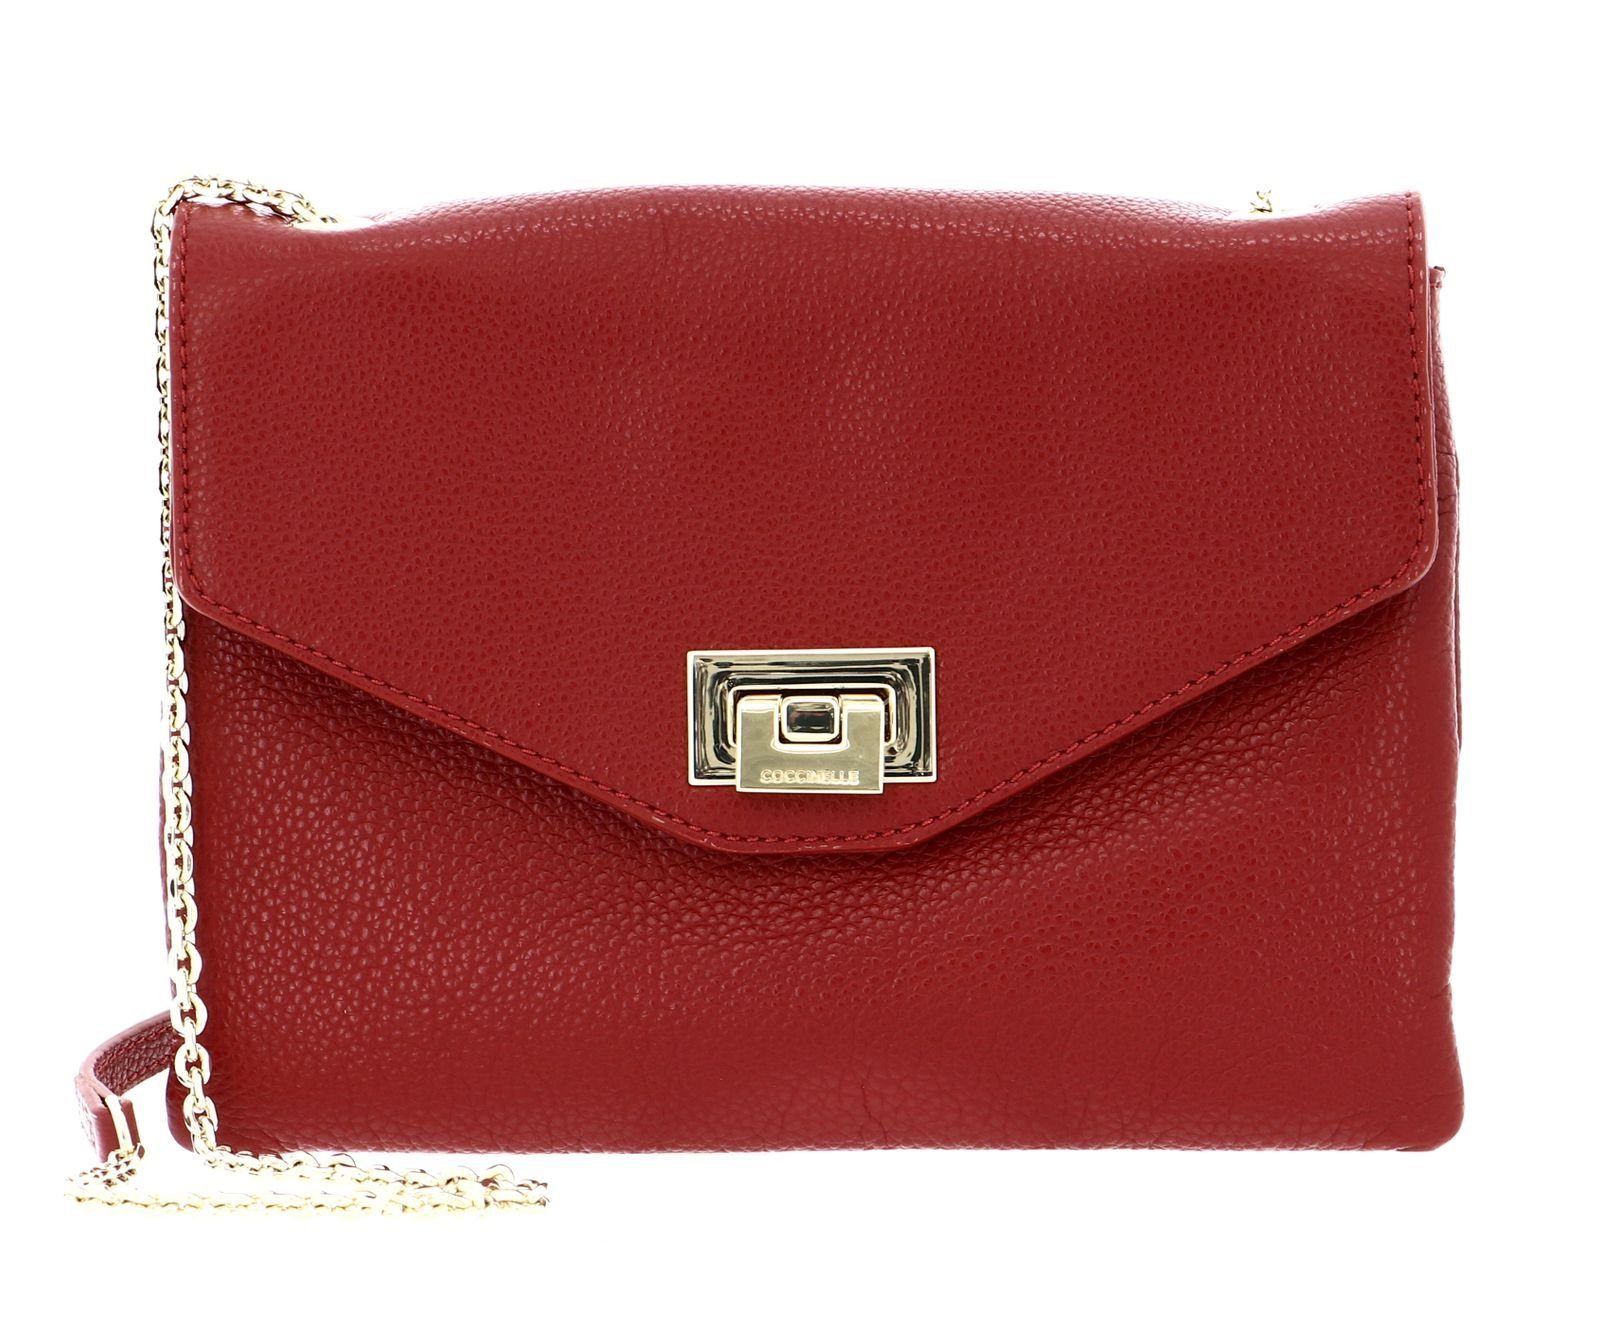 Rote Coccinelle Taschen online kaufen | OTTO